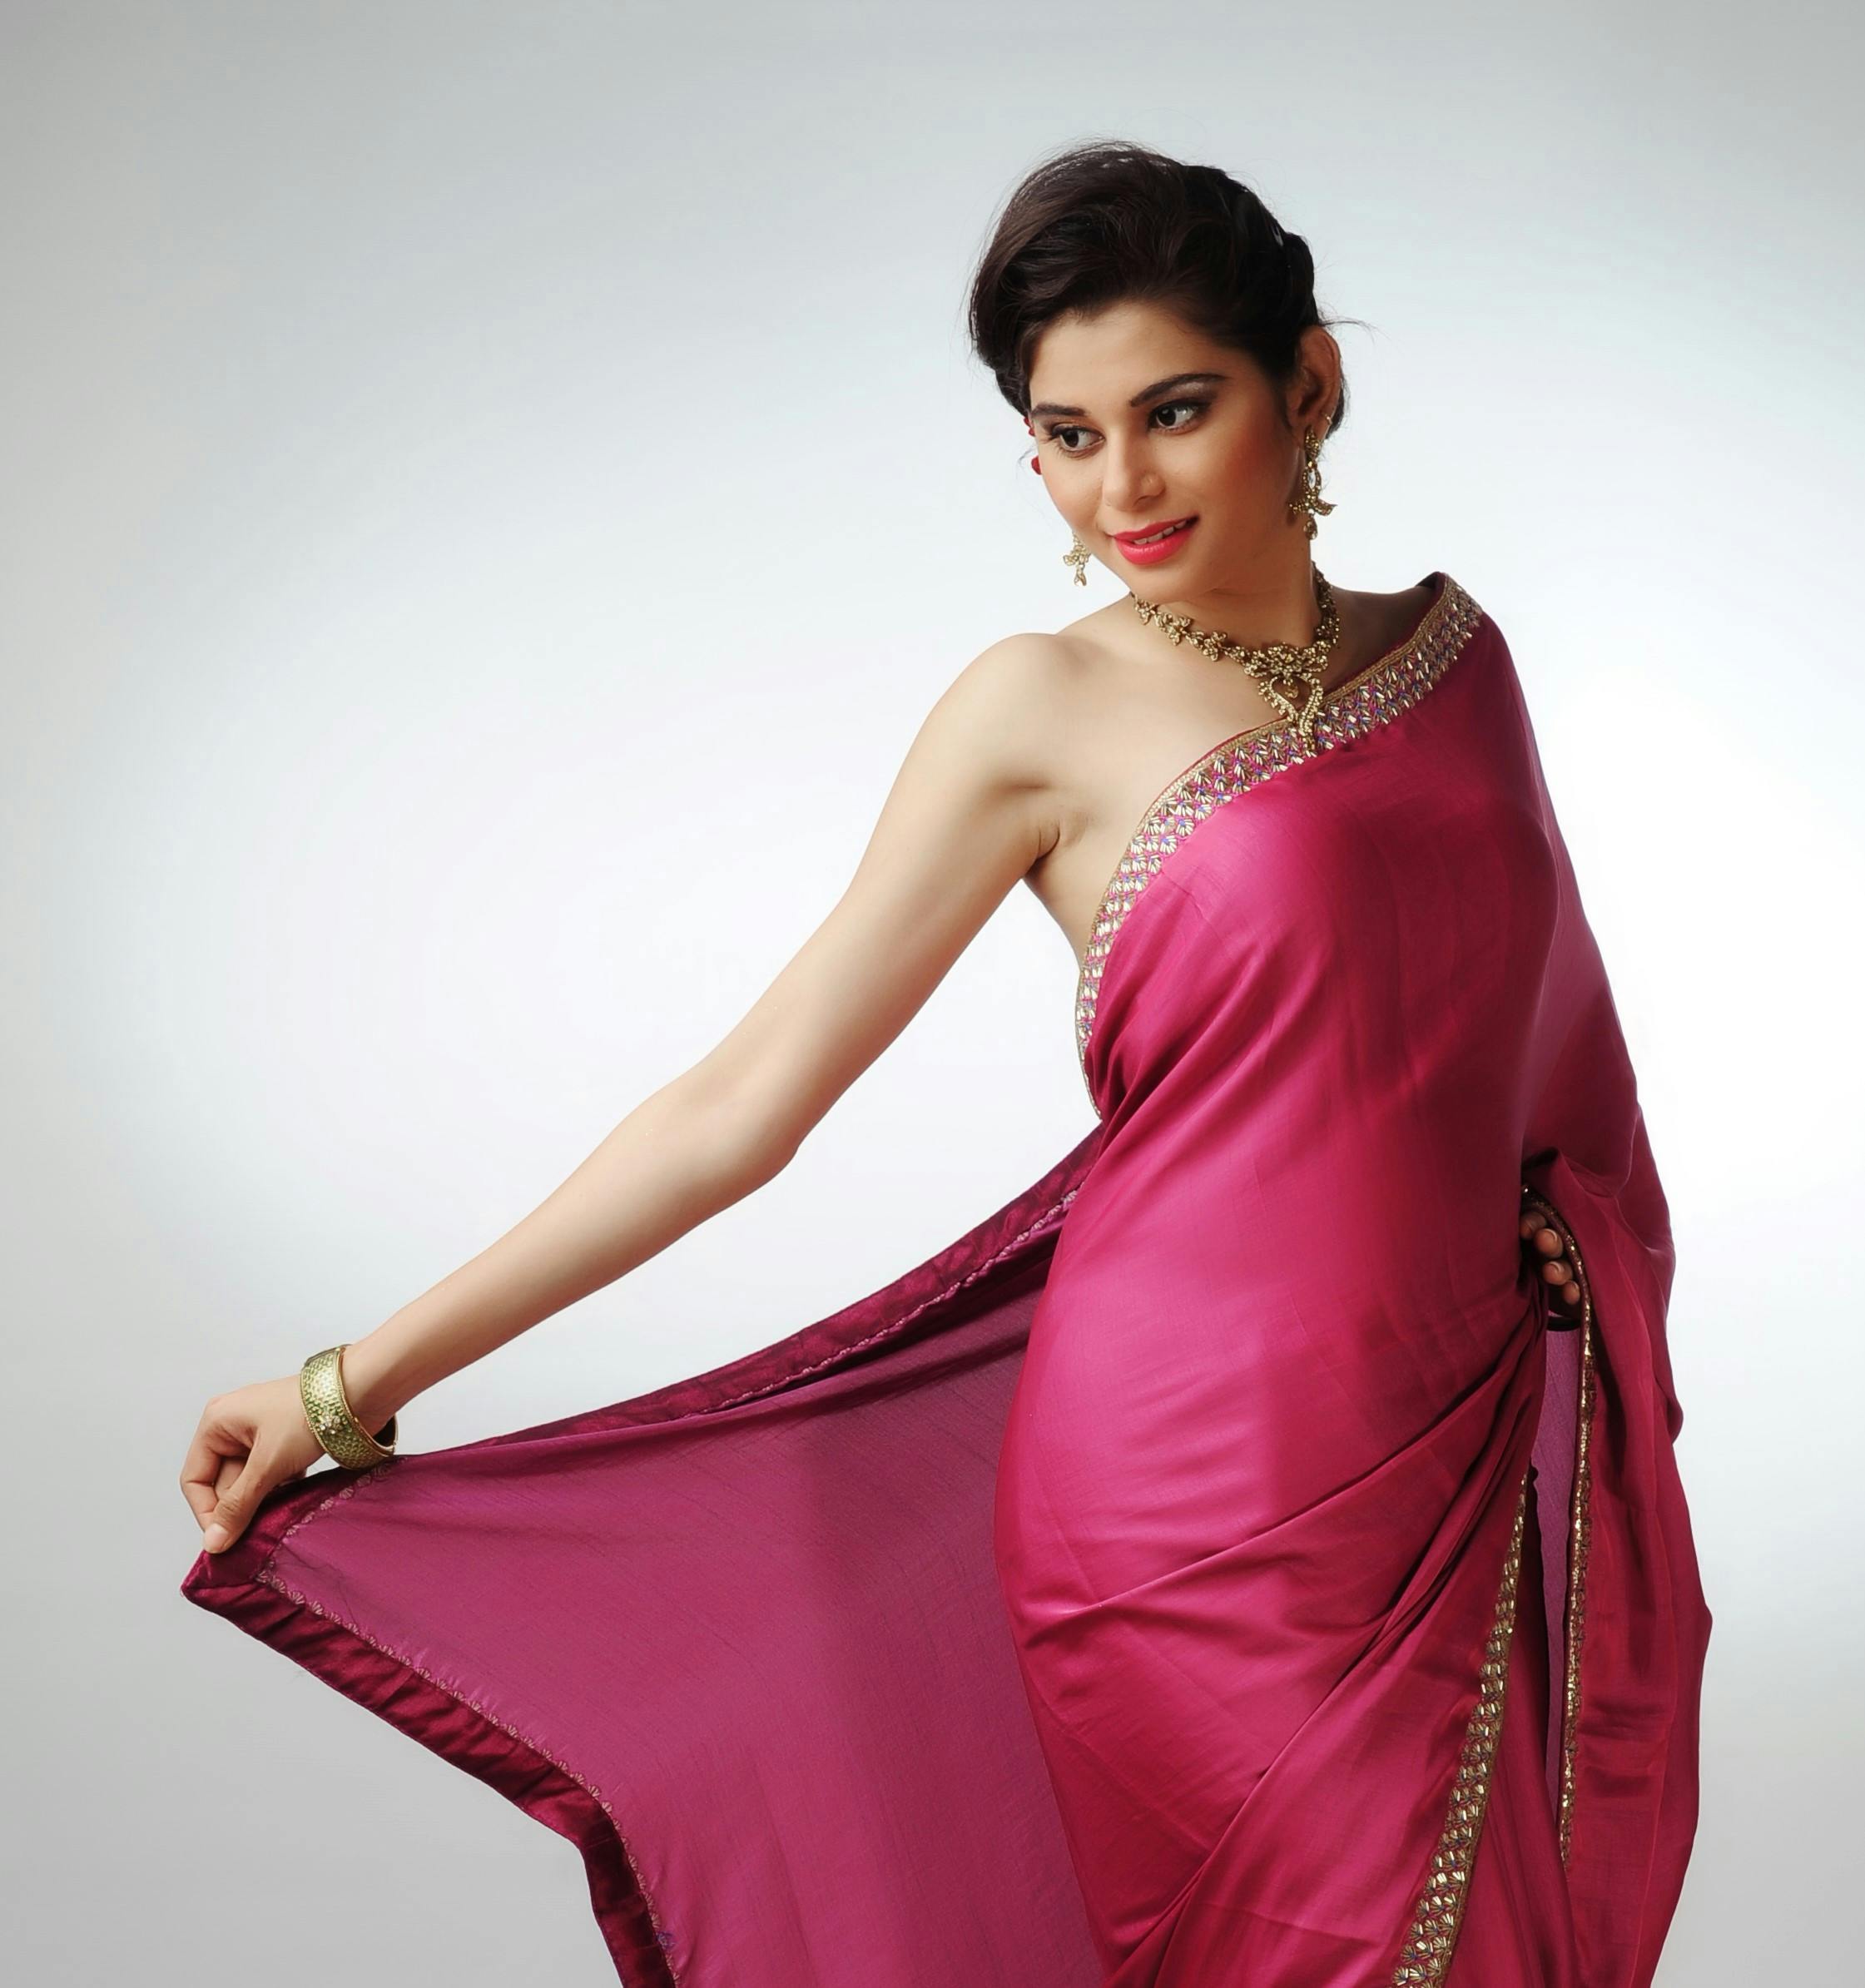 Indian Actress Photos, Download The BEST Free Indian Actress Stock Photos & HD  Images